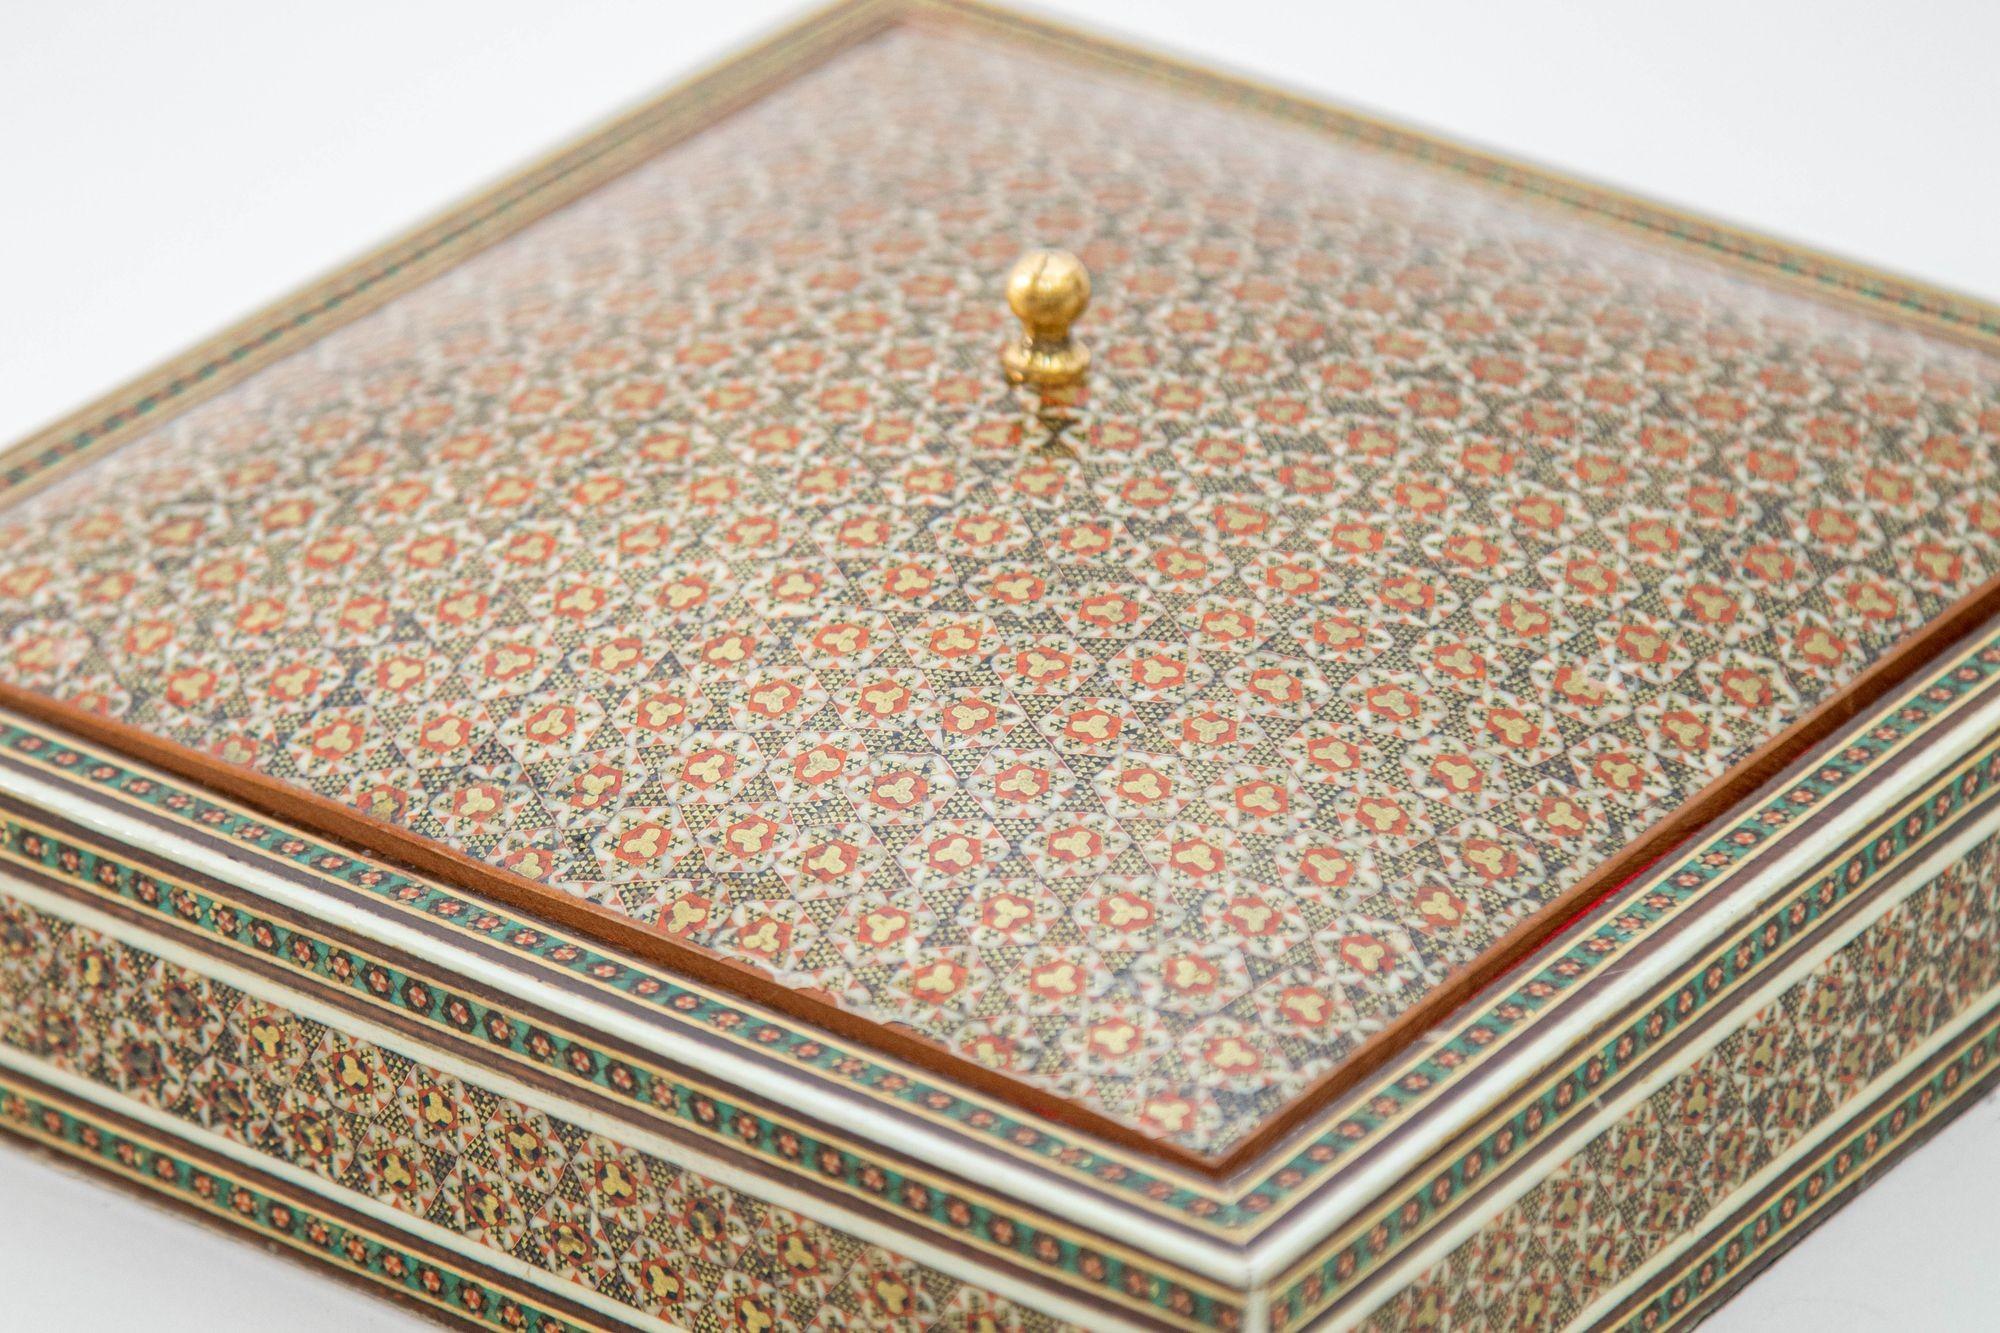 Boîte à bijoux avec couvercle, datant des années 1950, de style anglo-indien et indo-persan, incrustée de micro-mosaïques.
Grande boîte vintage à incrustations complexes de style persan du Moyen-Orient, avec des motifs floraux et géométriques